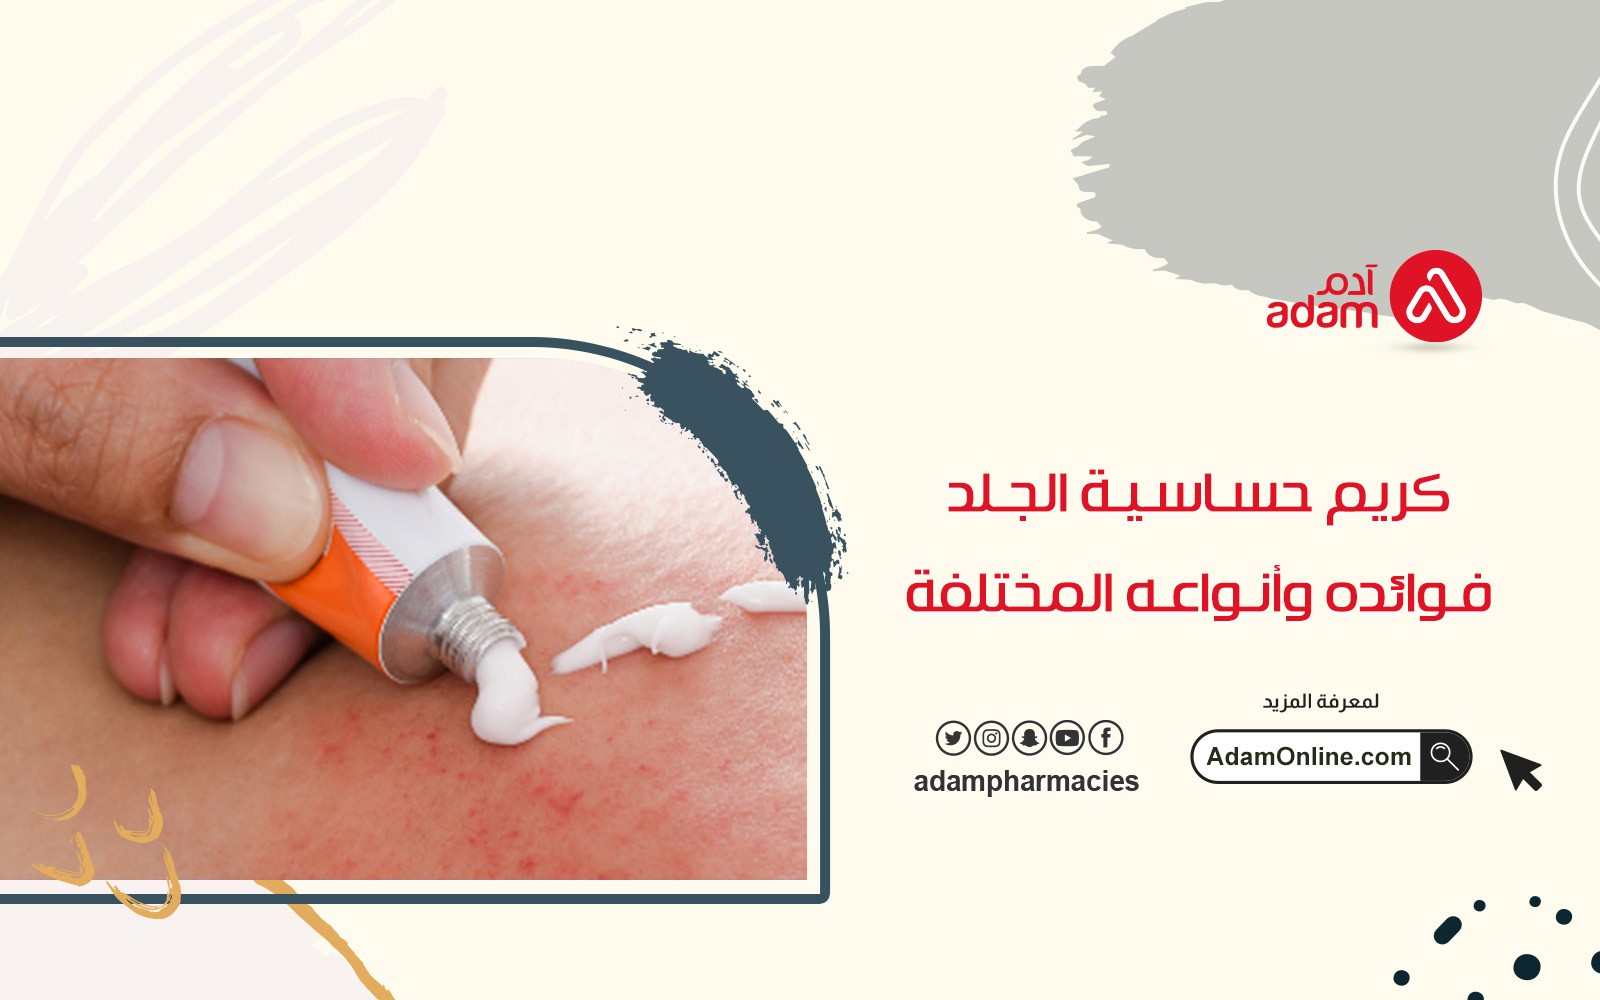 كريم حساسية الجلد فوائده وأنواعه المختلفة 